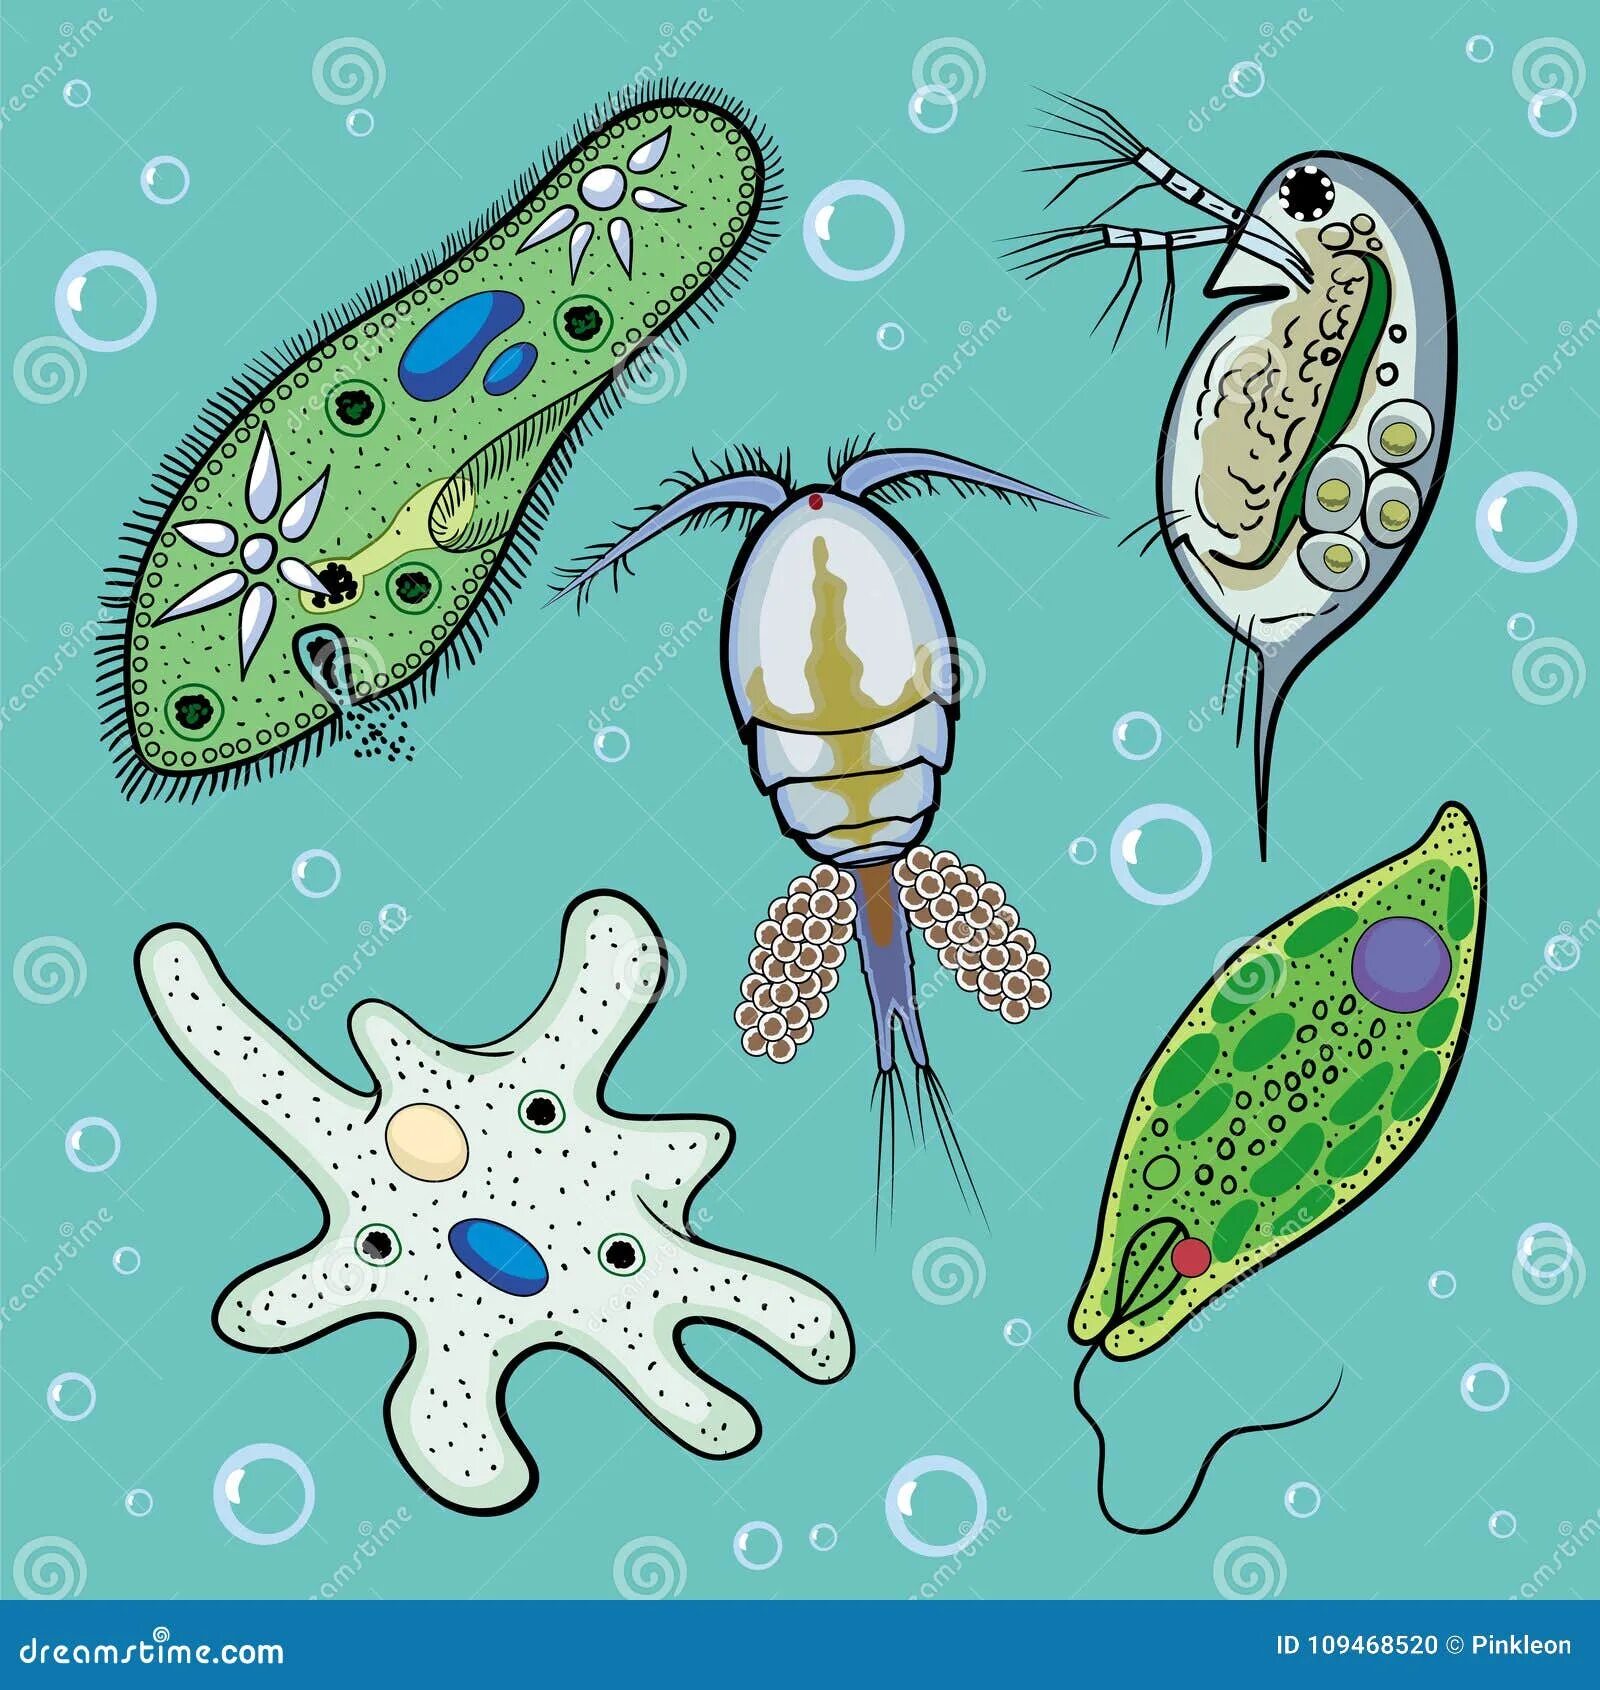 Эволюция одноклеточных водорослей. Циклоп одноклеточное. Простейшие организмы. Циклоп одноклеточный организм. Рисунки простейших по биологии.